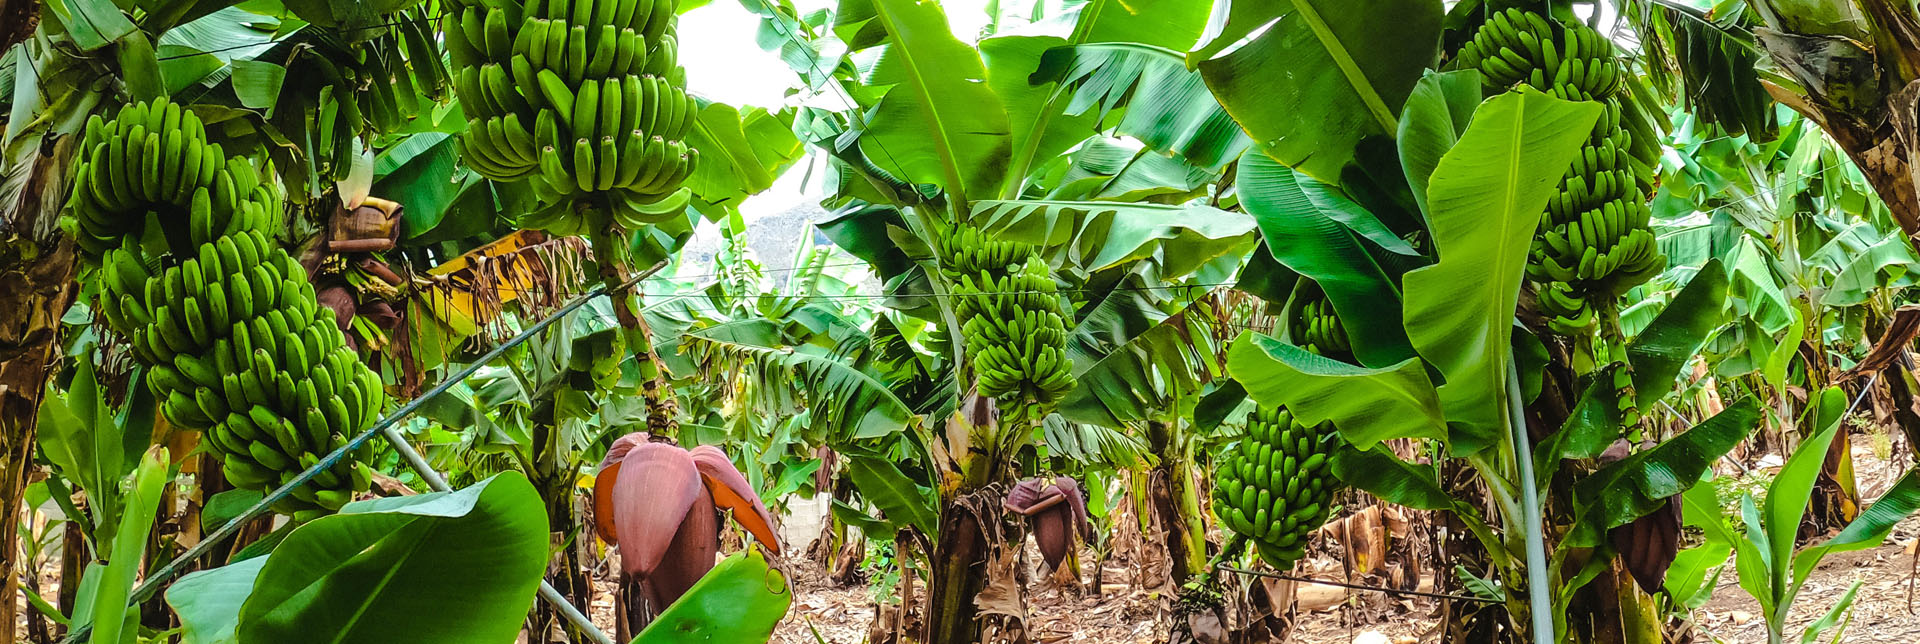 Bananenplantagen | Drei nachhaltige Verfahren